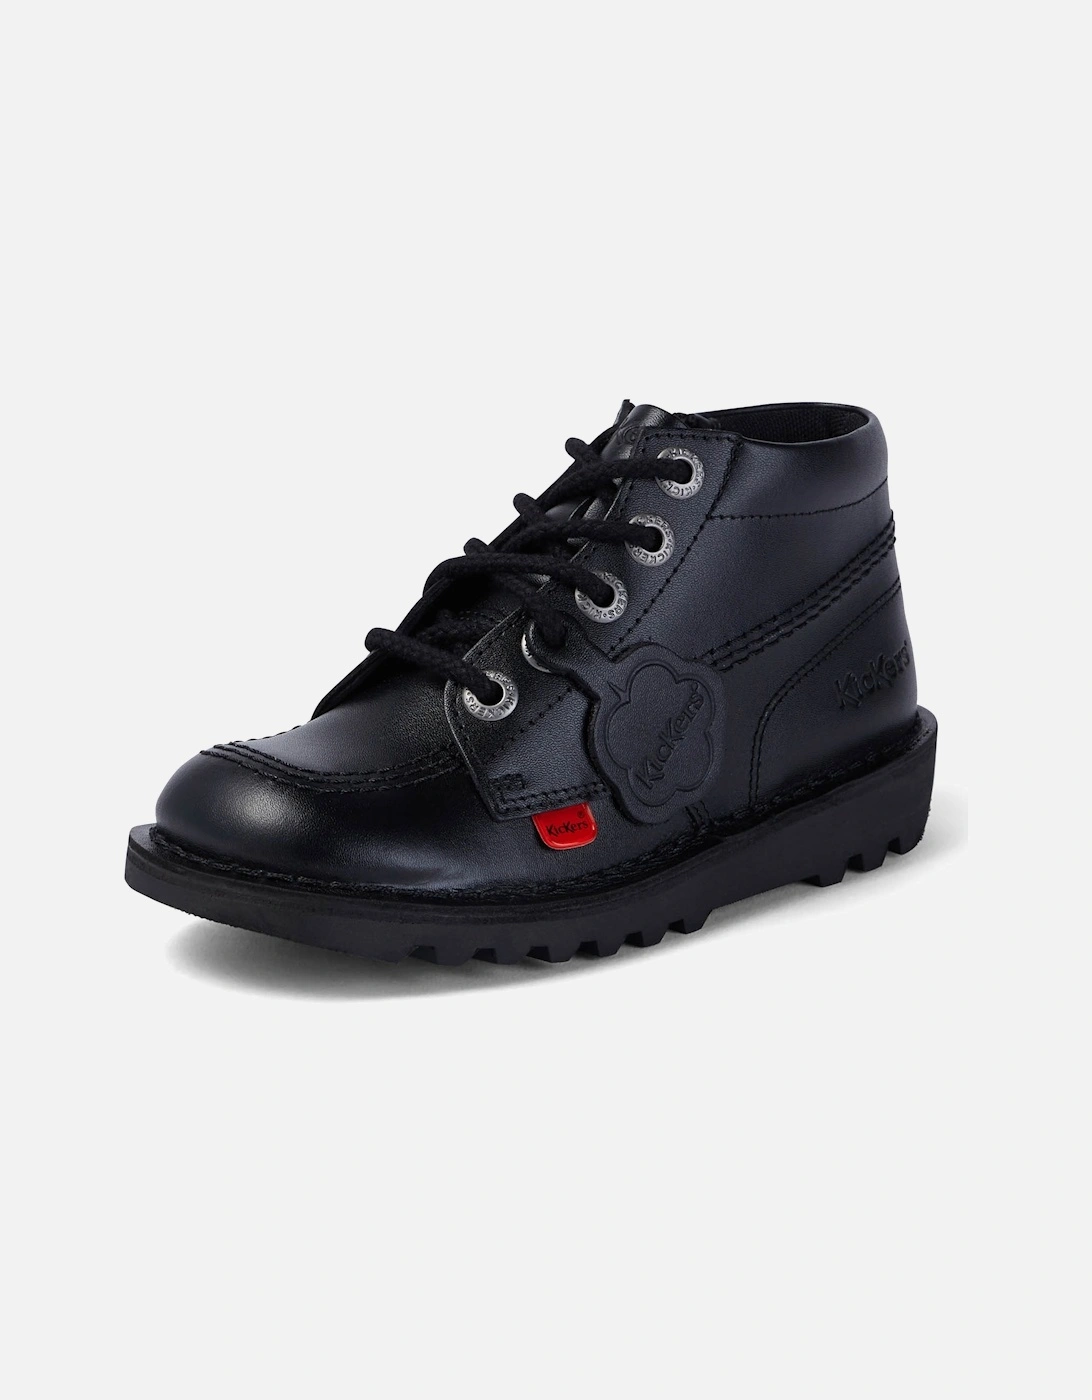 Junior Hi Zip Boots (Black)